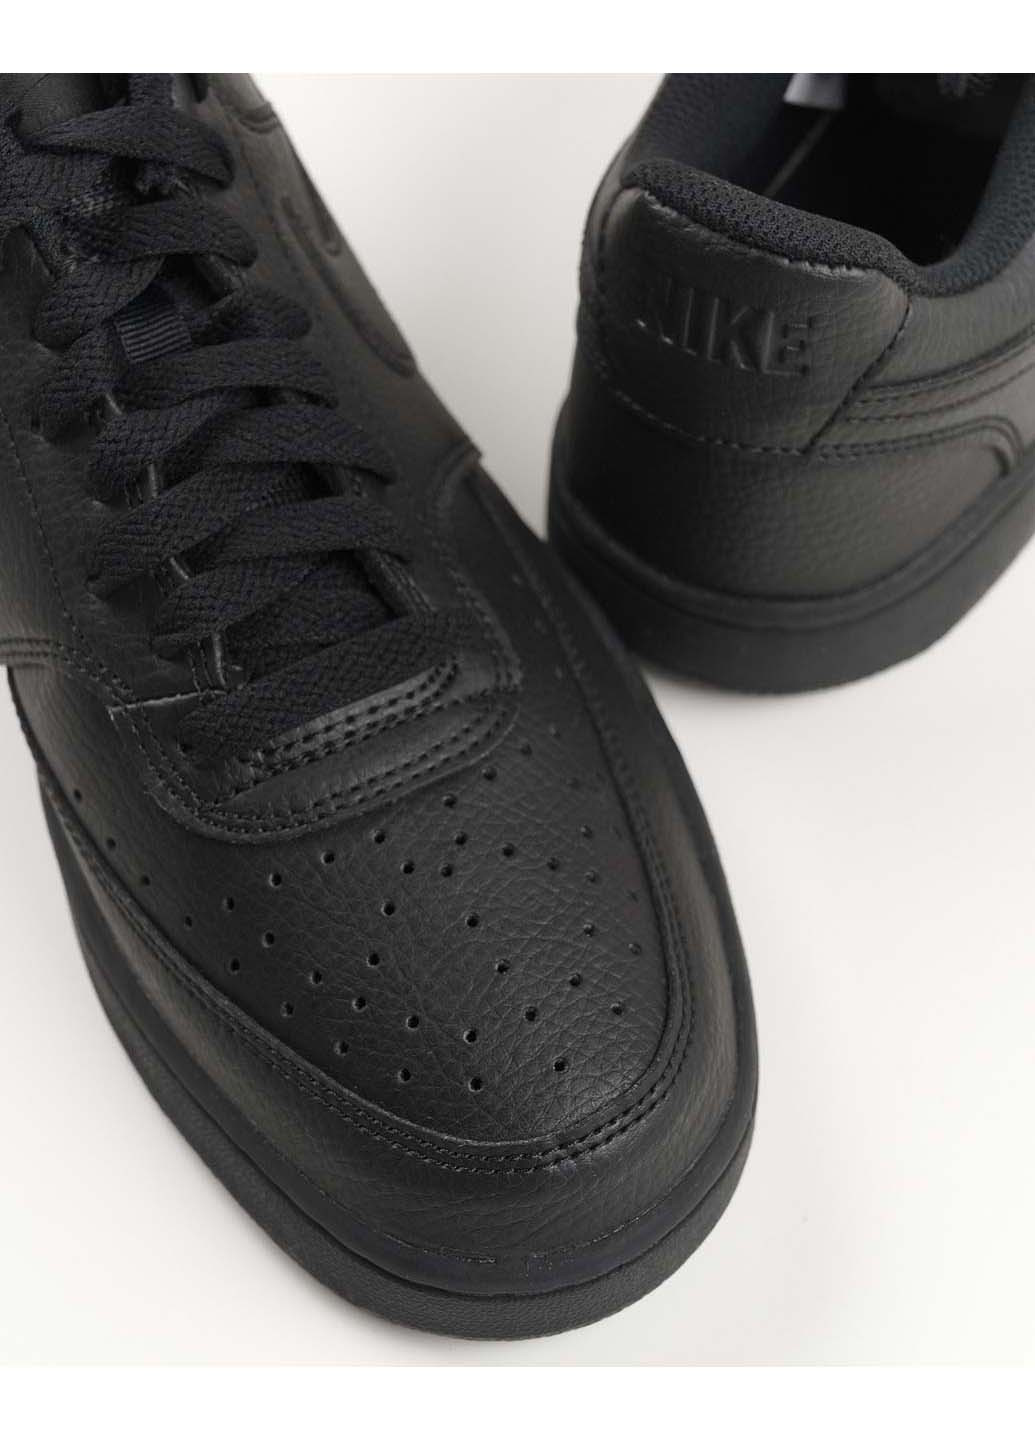 Черные демисезонные мужские кроссовки court vision low next nature dh2987-002 Nike